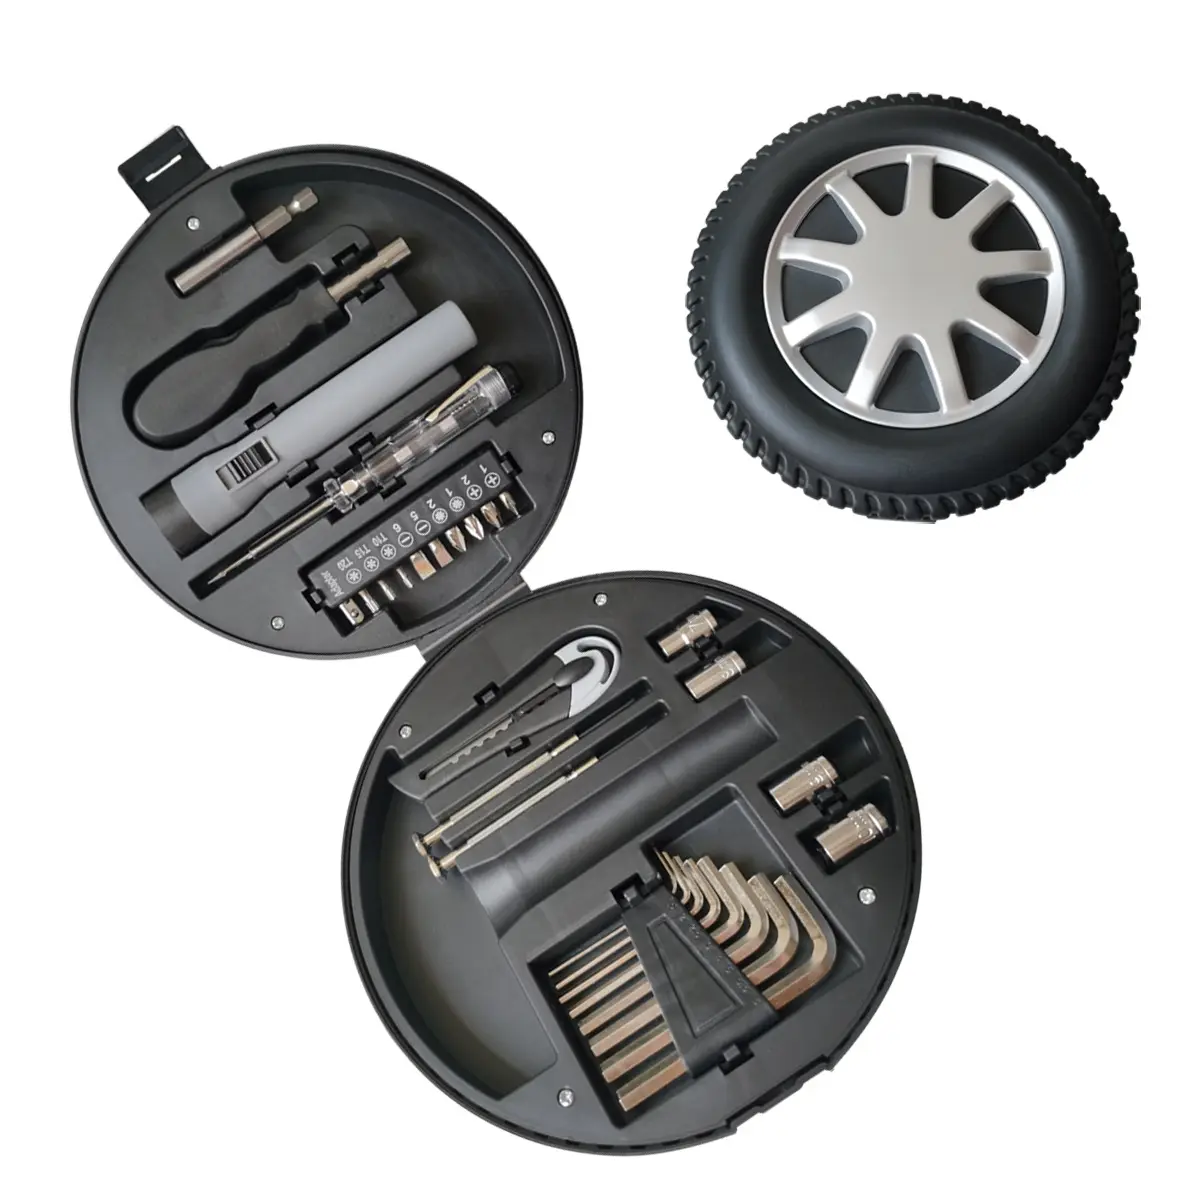 Kit de herramientas para reparación de automóviles, Set de 29 unidades en forma de neumático, regalo promocional